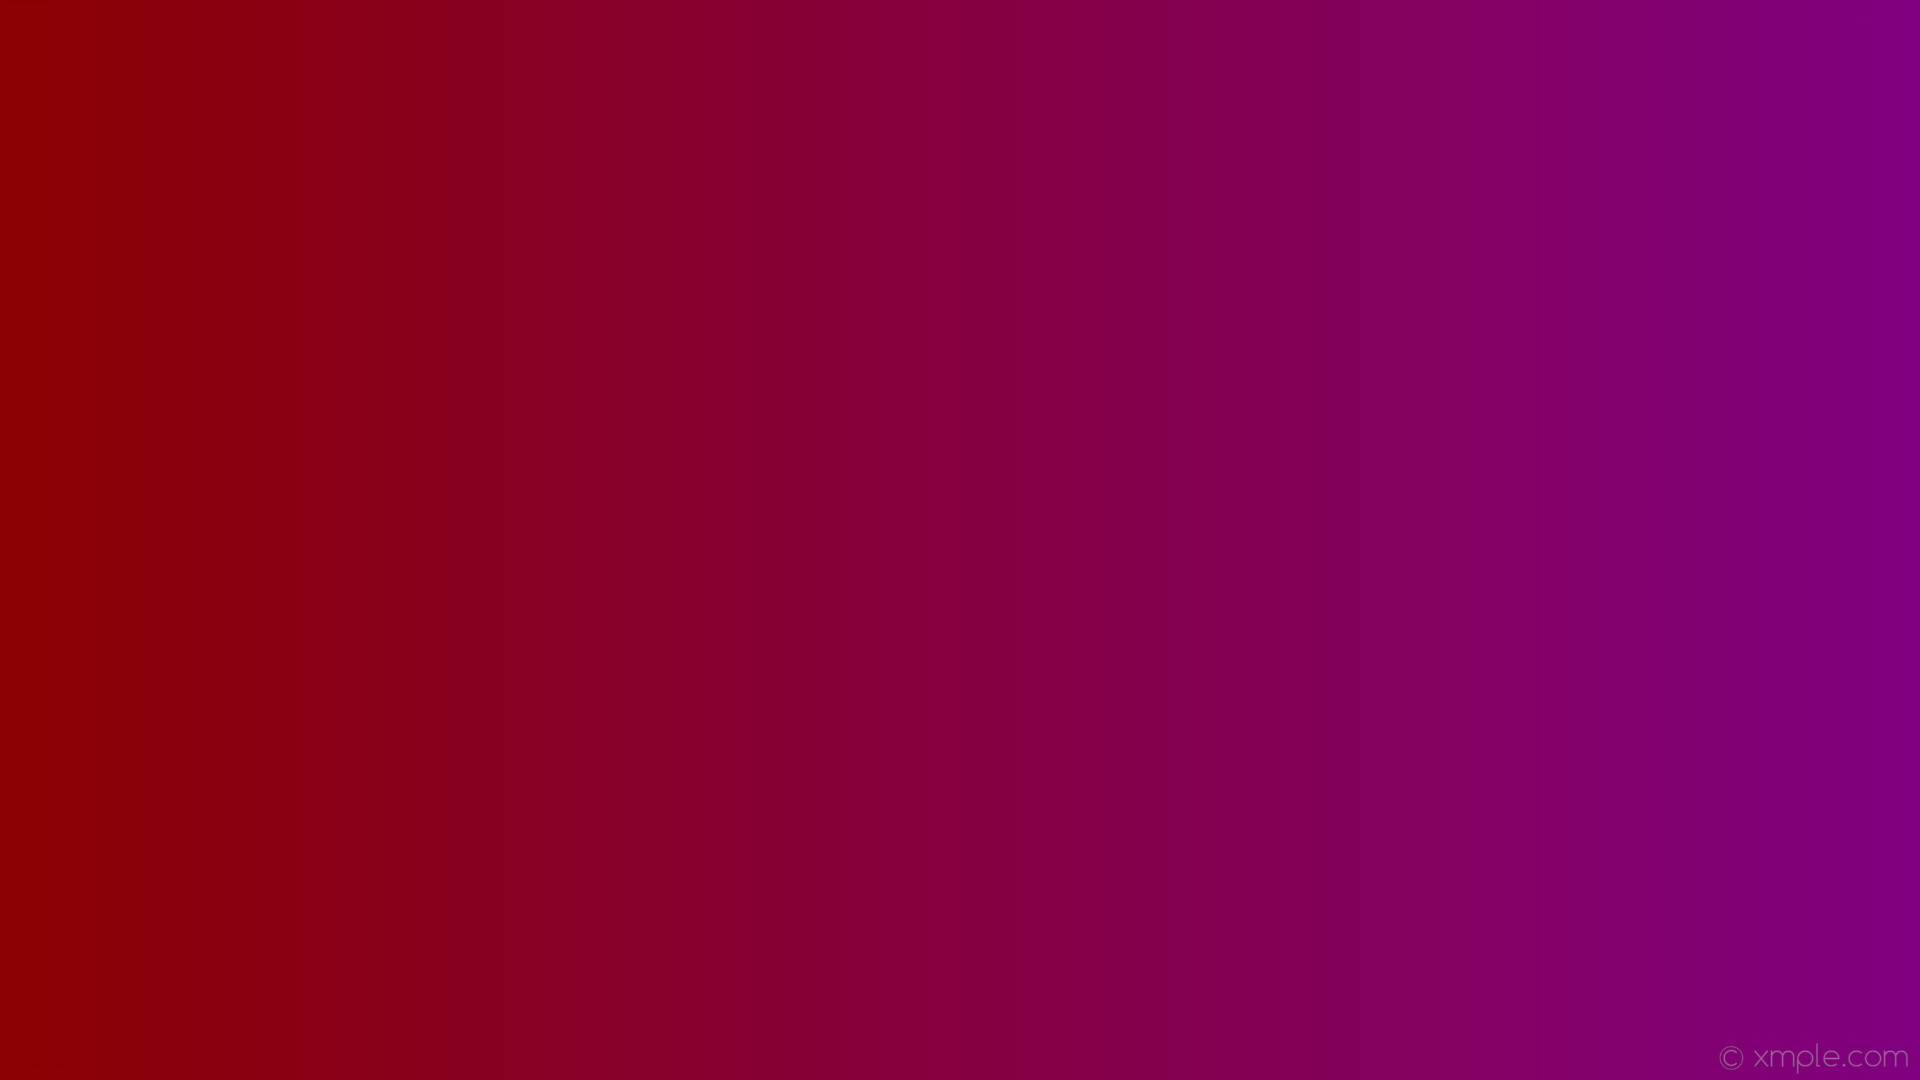 47+] Purple and Red Wallpaper - WallpaperSafari